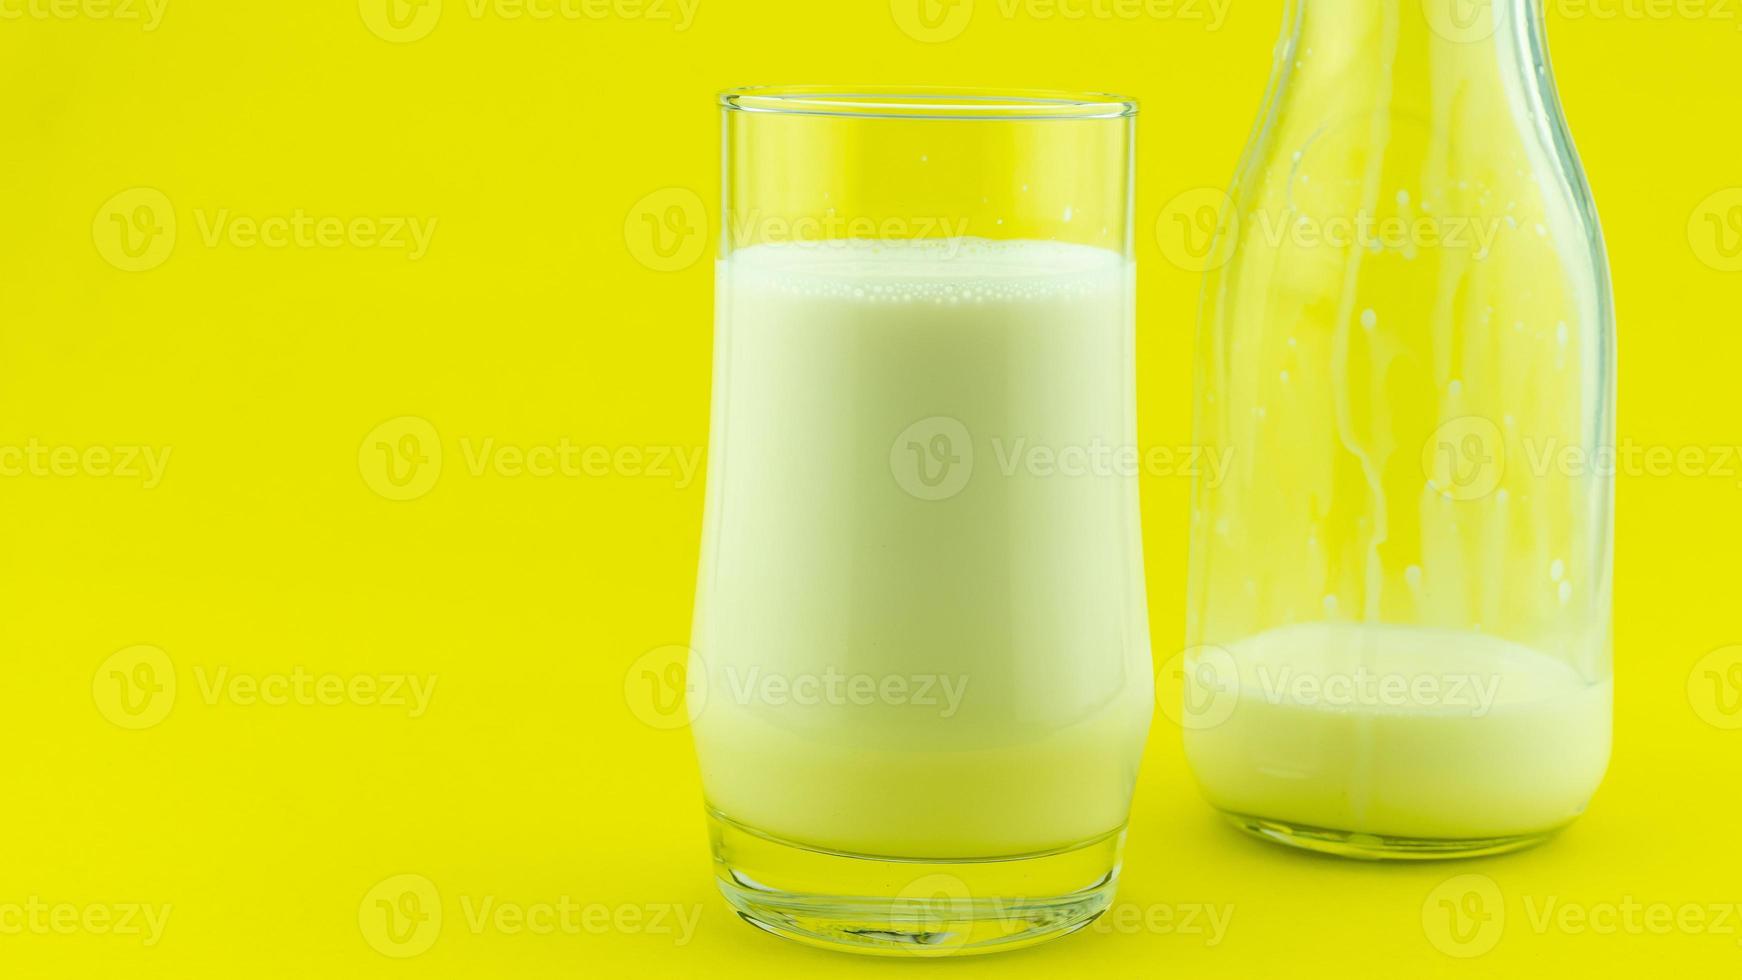 Banner de un vaso de leche sobre fondo de colores espacio de copia del día de la leche foto